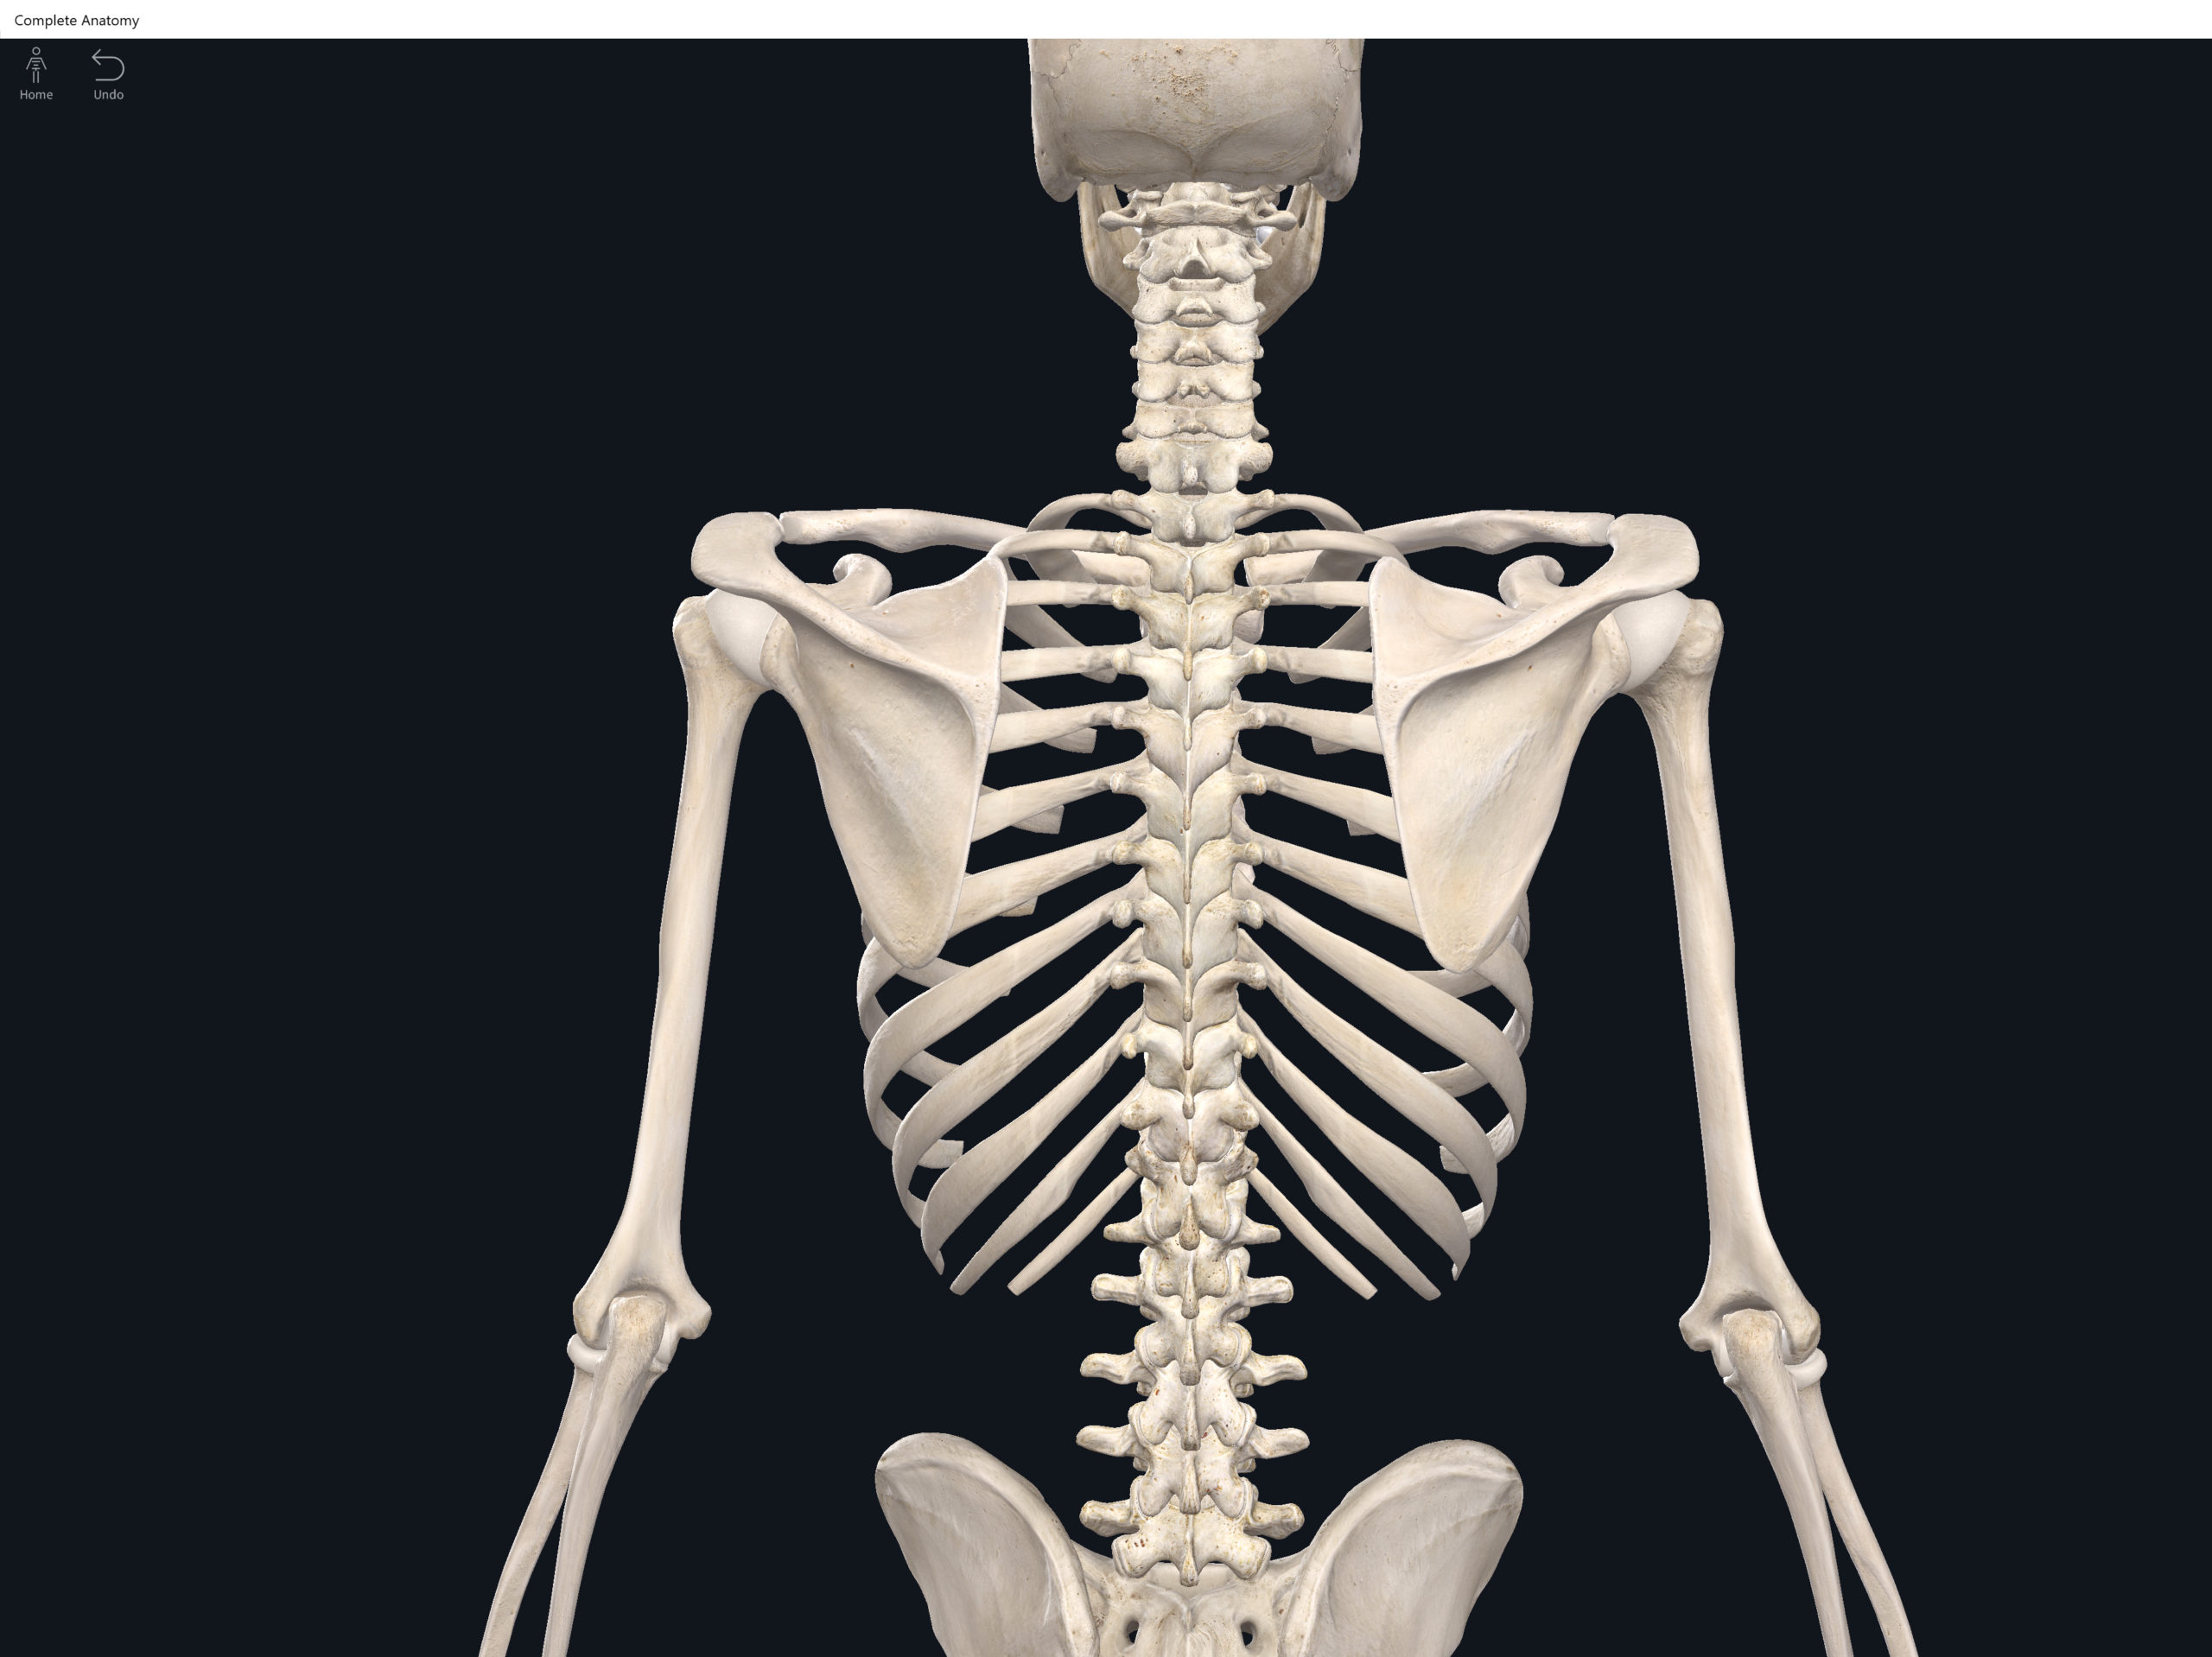 narrowing of the space in between vertebrae